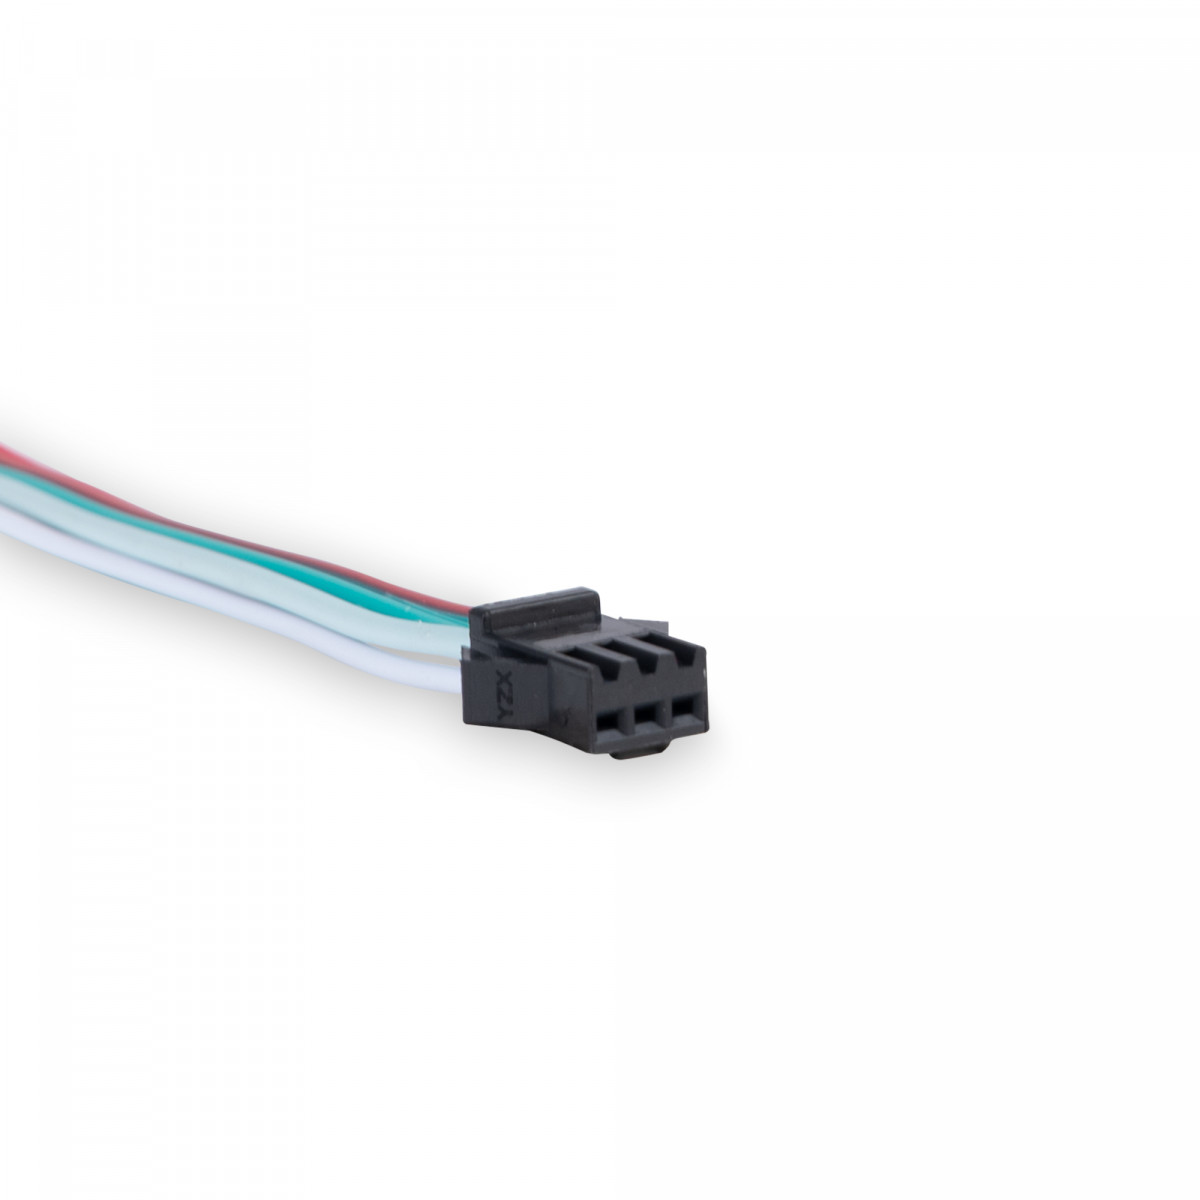 Steckverbinder für digitale IC LED-Streifen 5-24V DC - Stecker, Verbinder